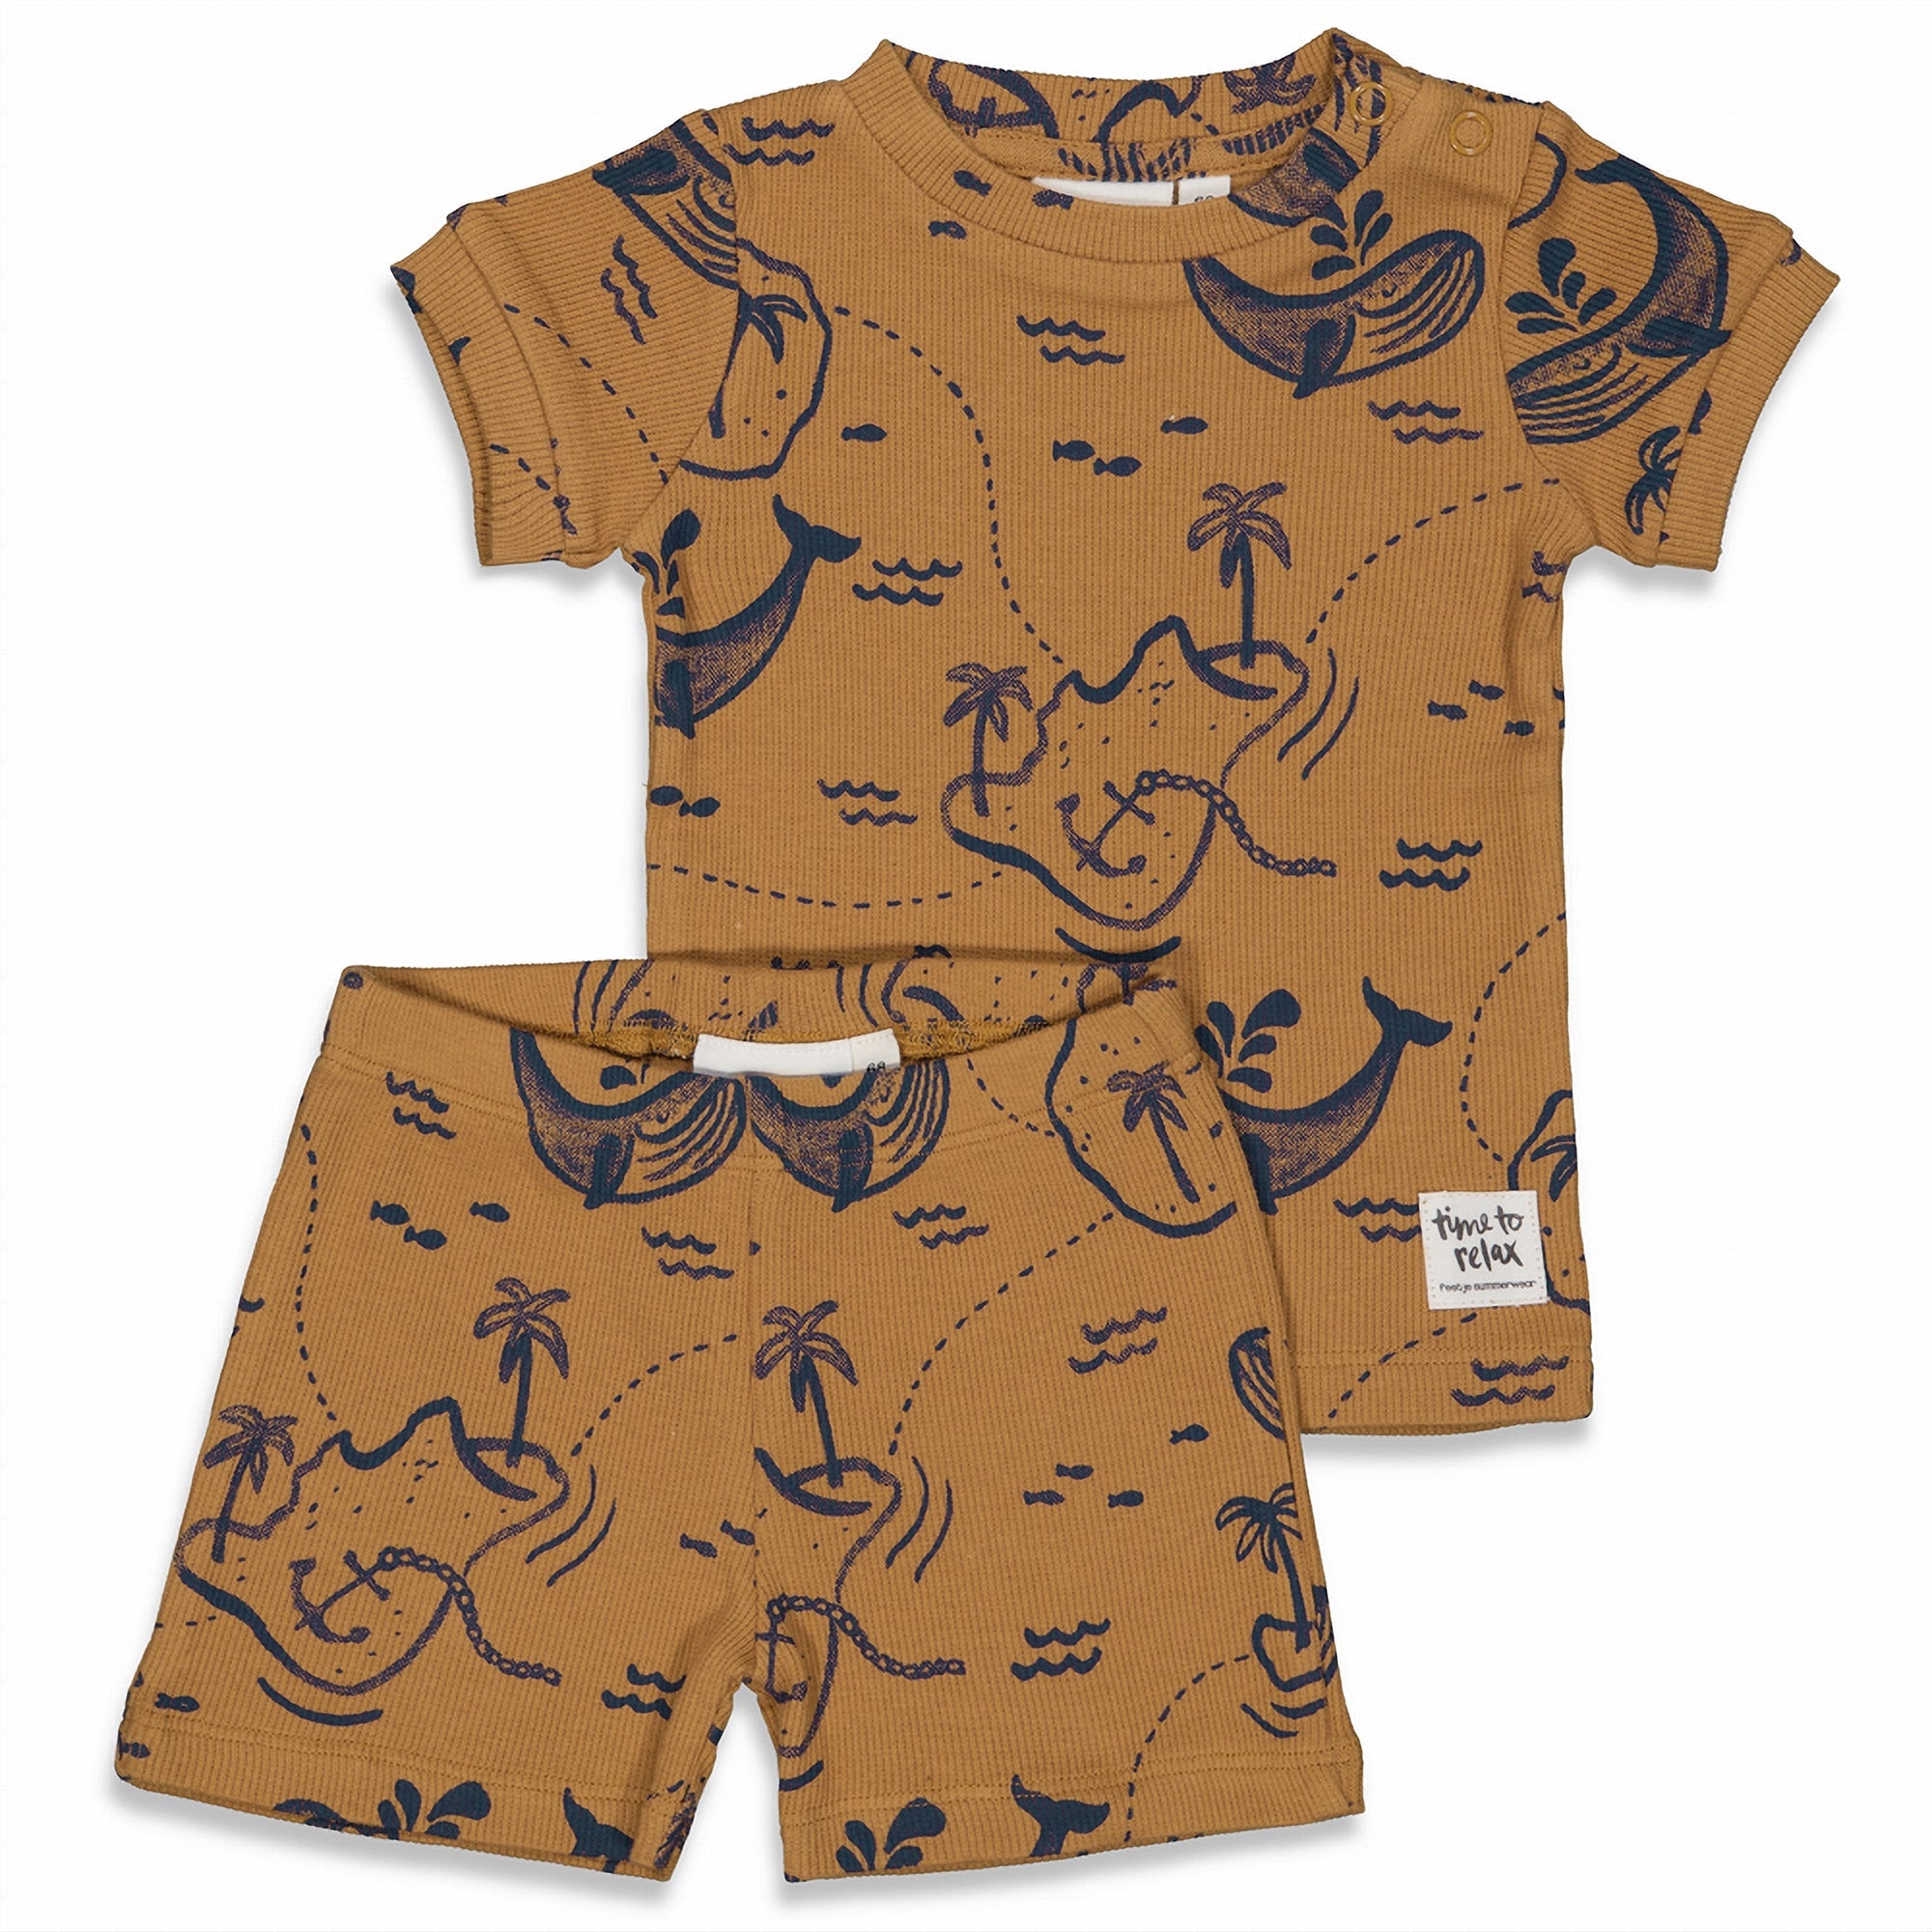 Jongens Wally Whale - Premium Summerwear by FEETJE van Feetje in de kleur Camel in maat 128.